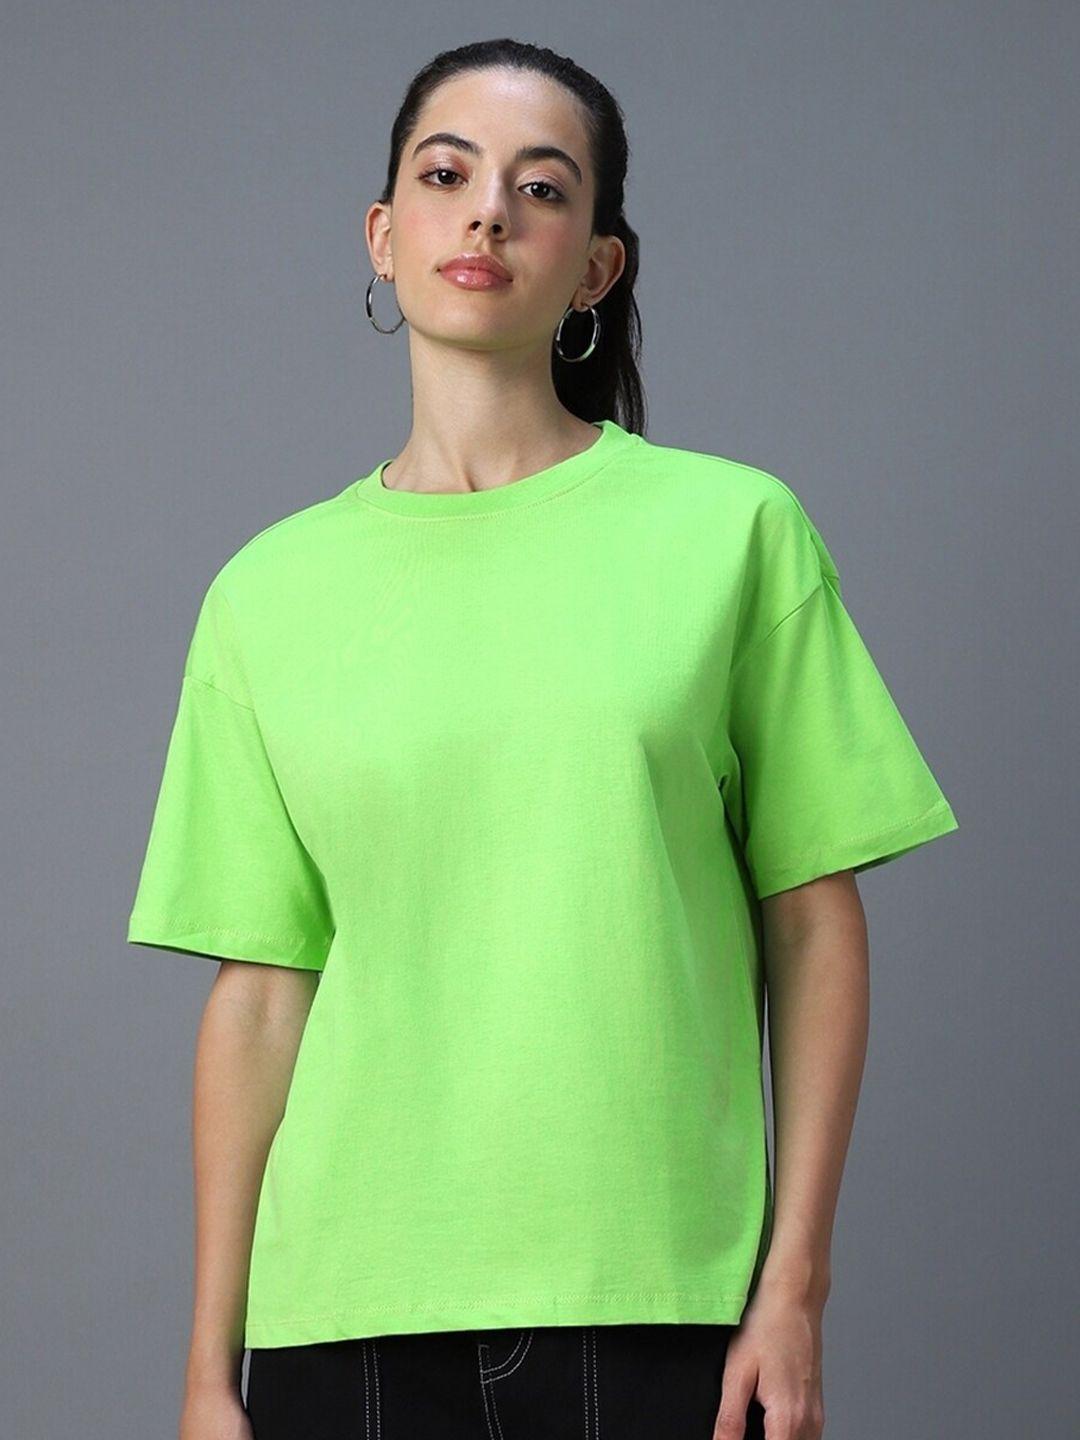 bewakoof-women-green-t-shirt